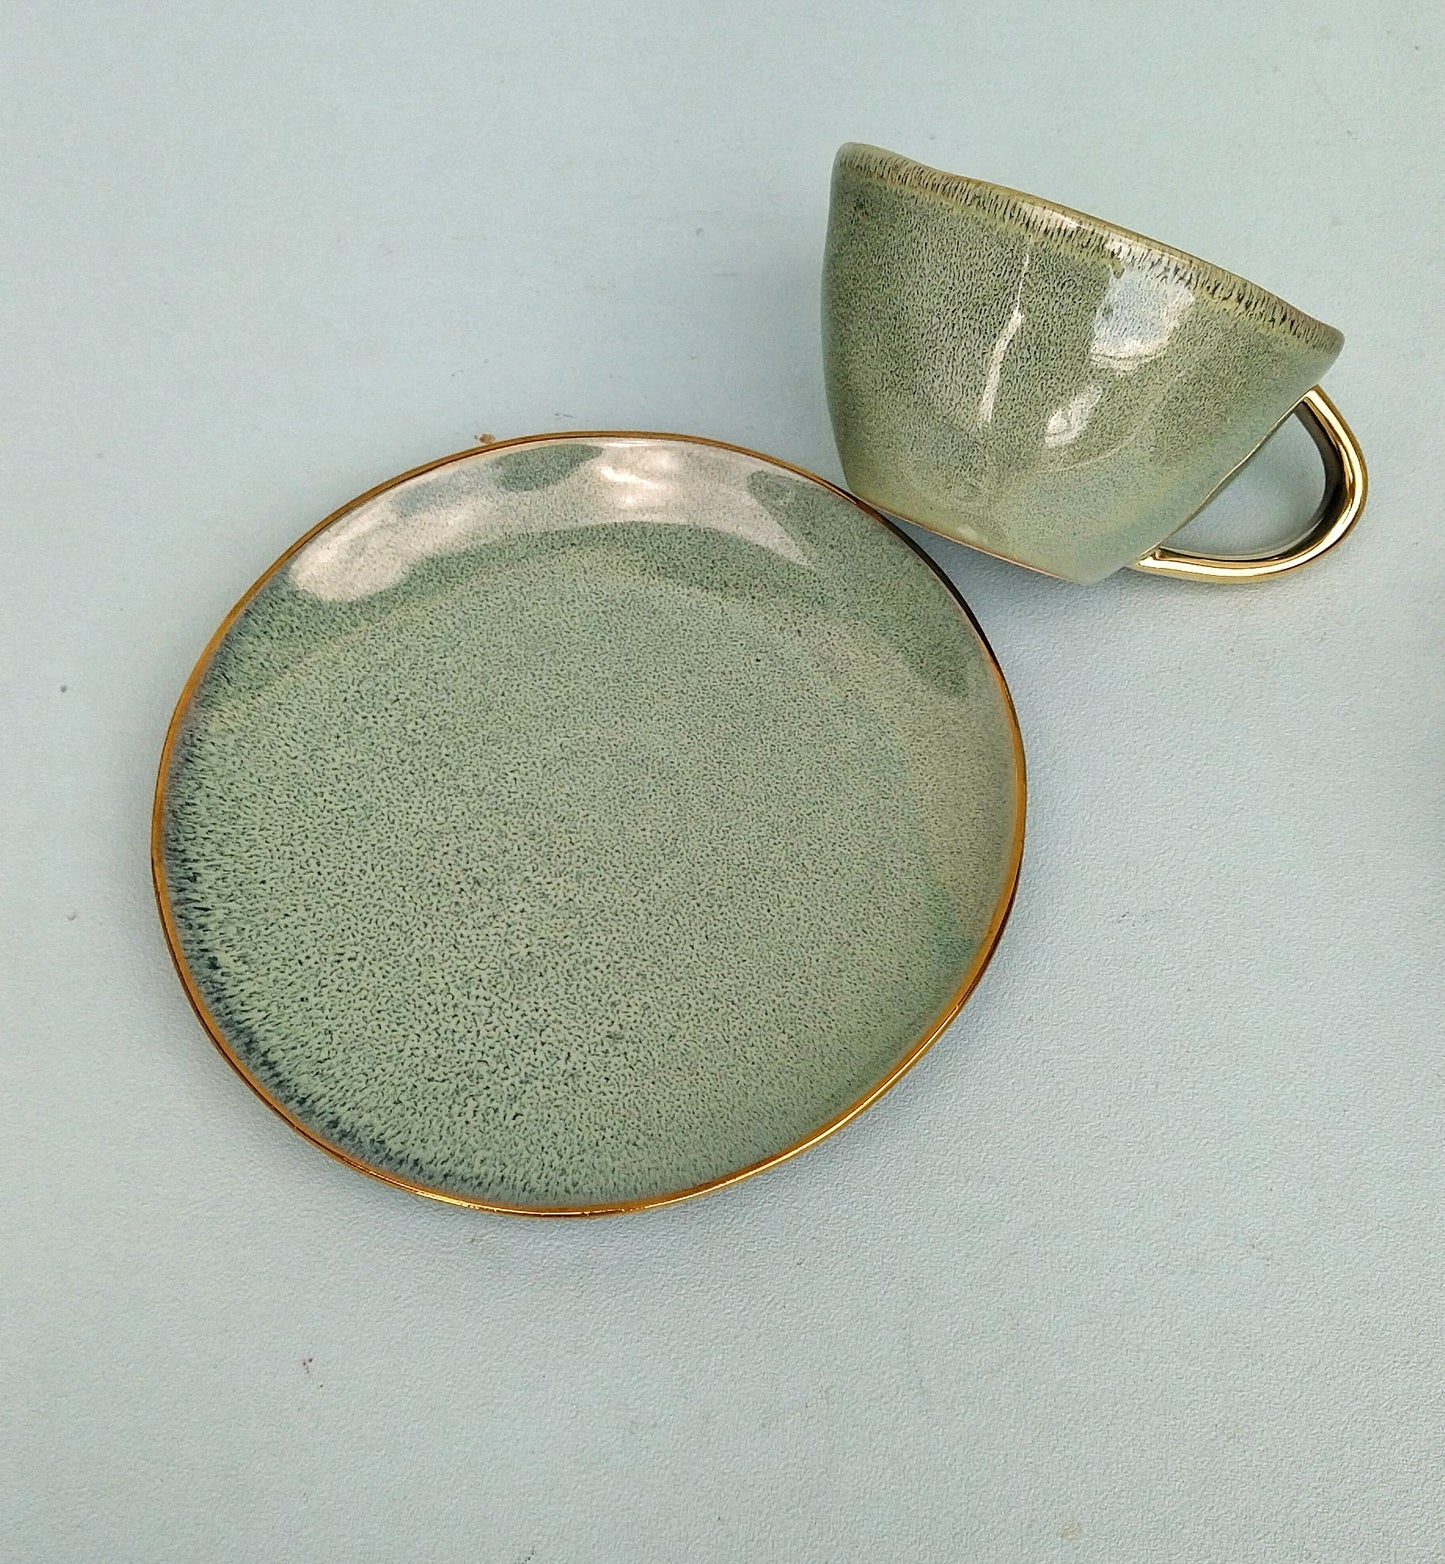 Extra Large Stoneware Mug, Eclectic Porcelain Mugs With Gold Handle